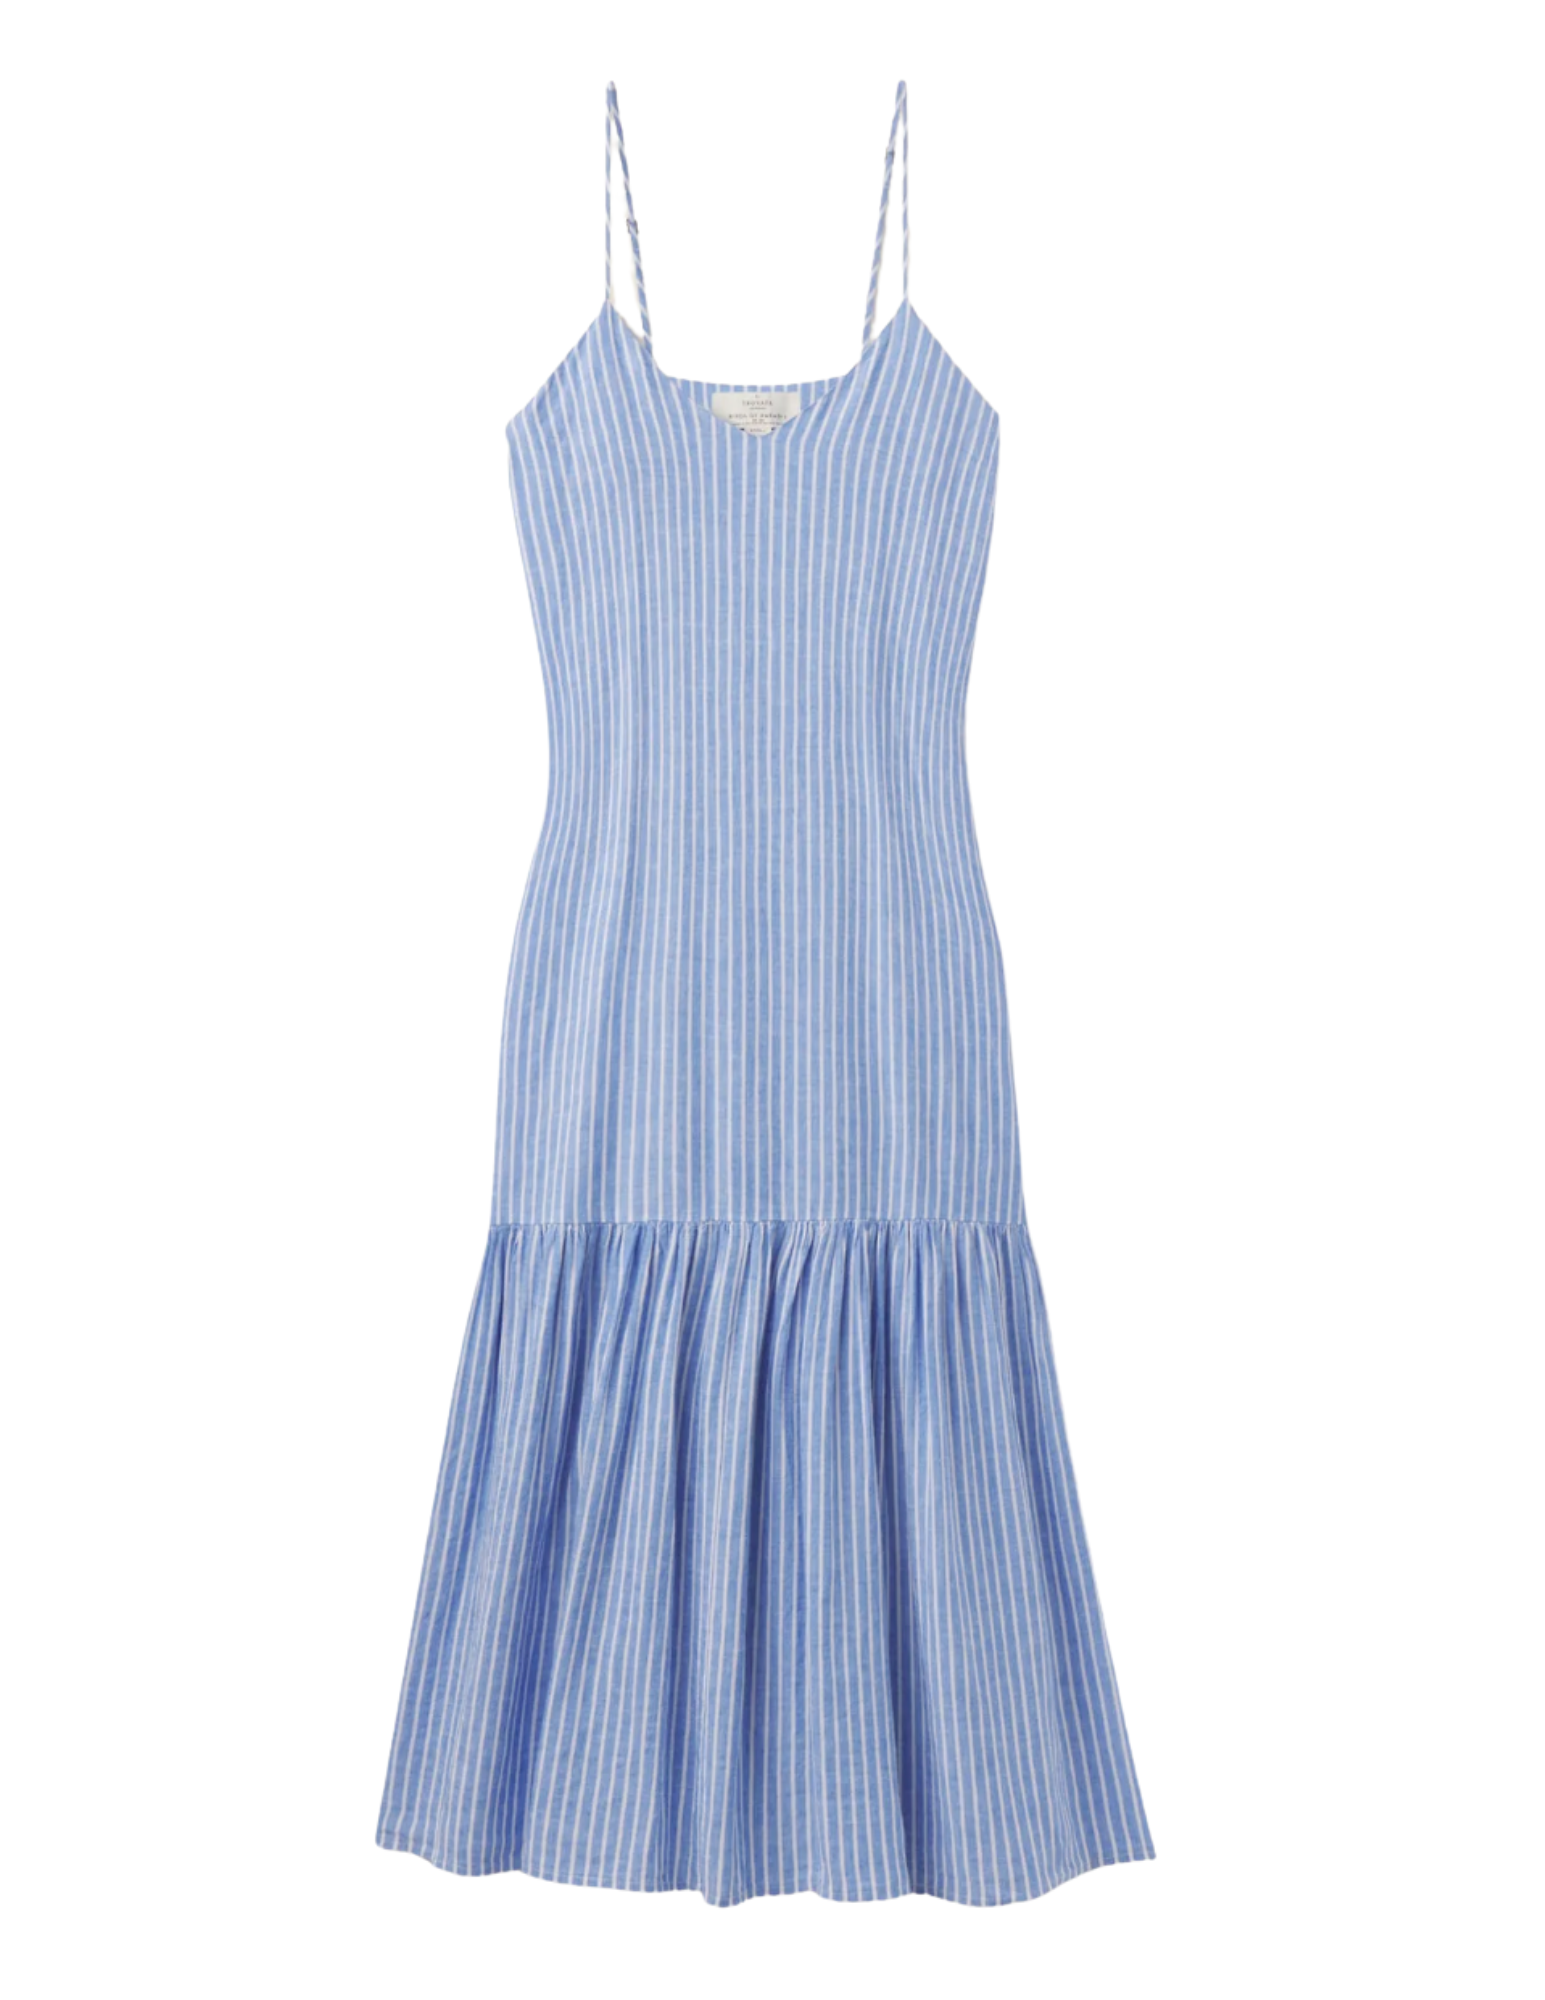 Ari Dress - Regatta Stripe